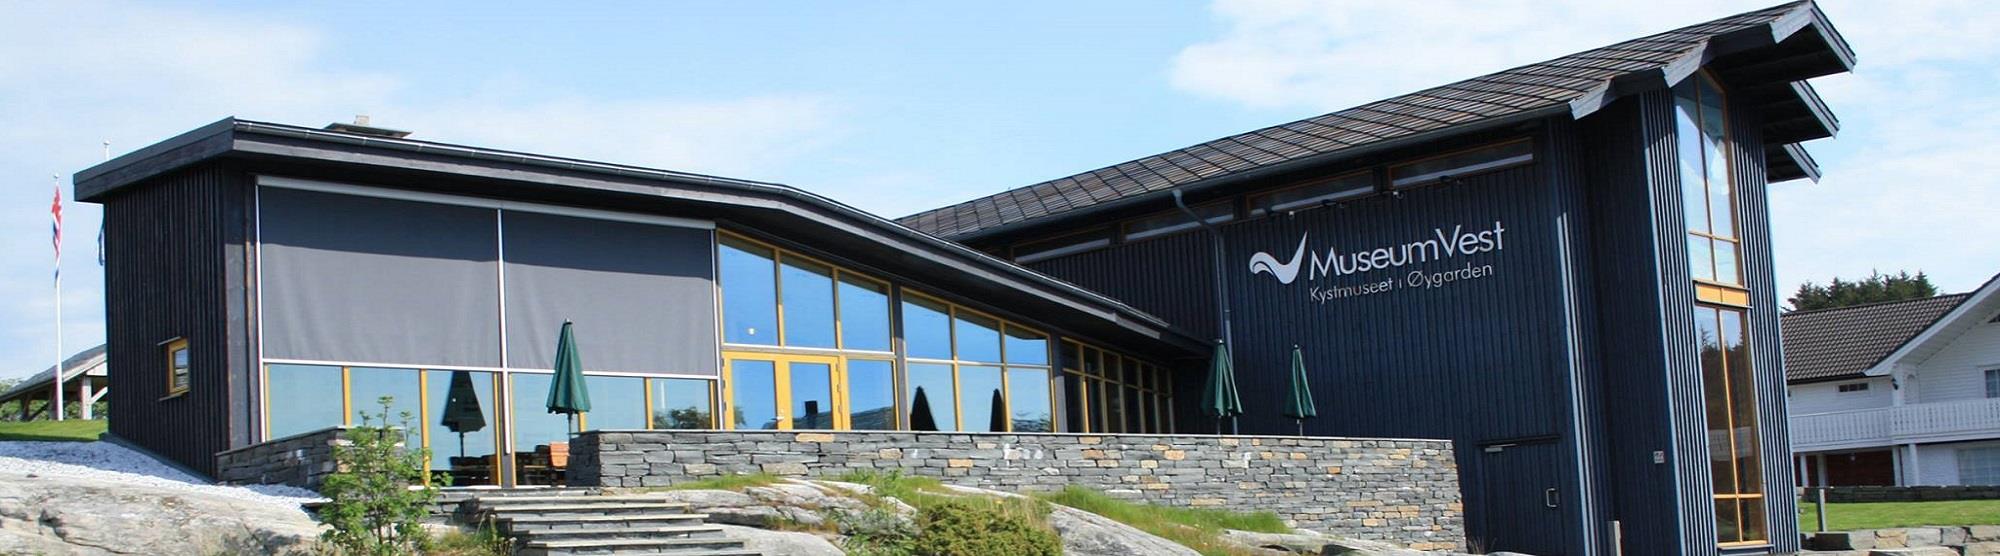 Opplev kystkulturen på Kystmuseet i Øygarden.